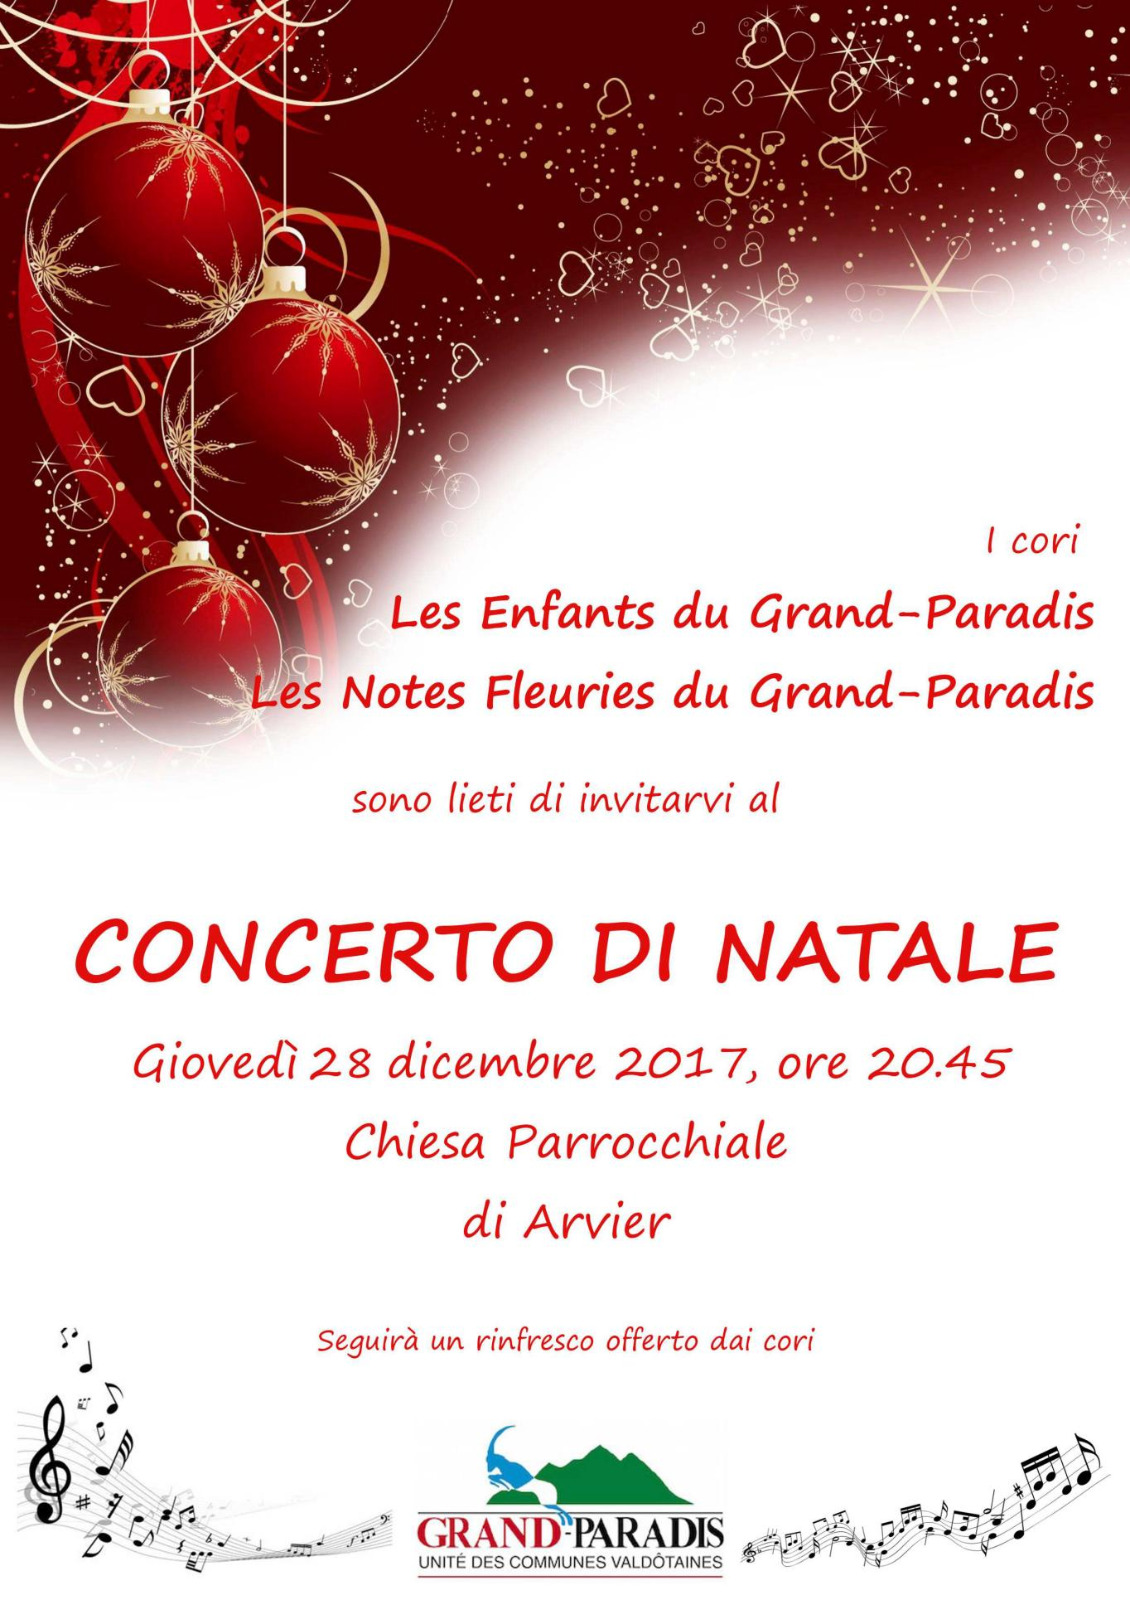 Concerto di Natale Grand-Paradis